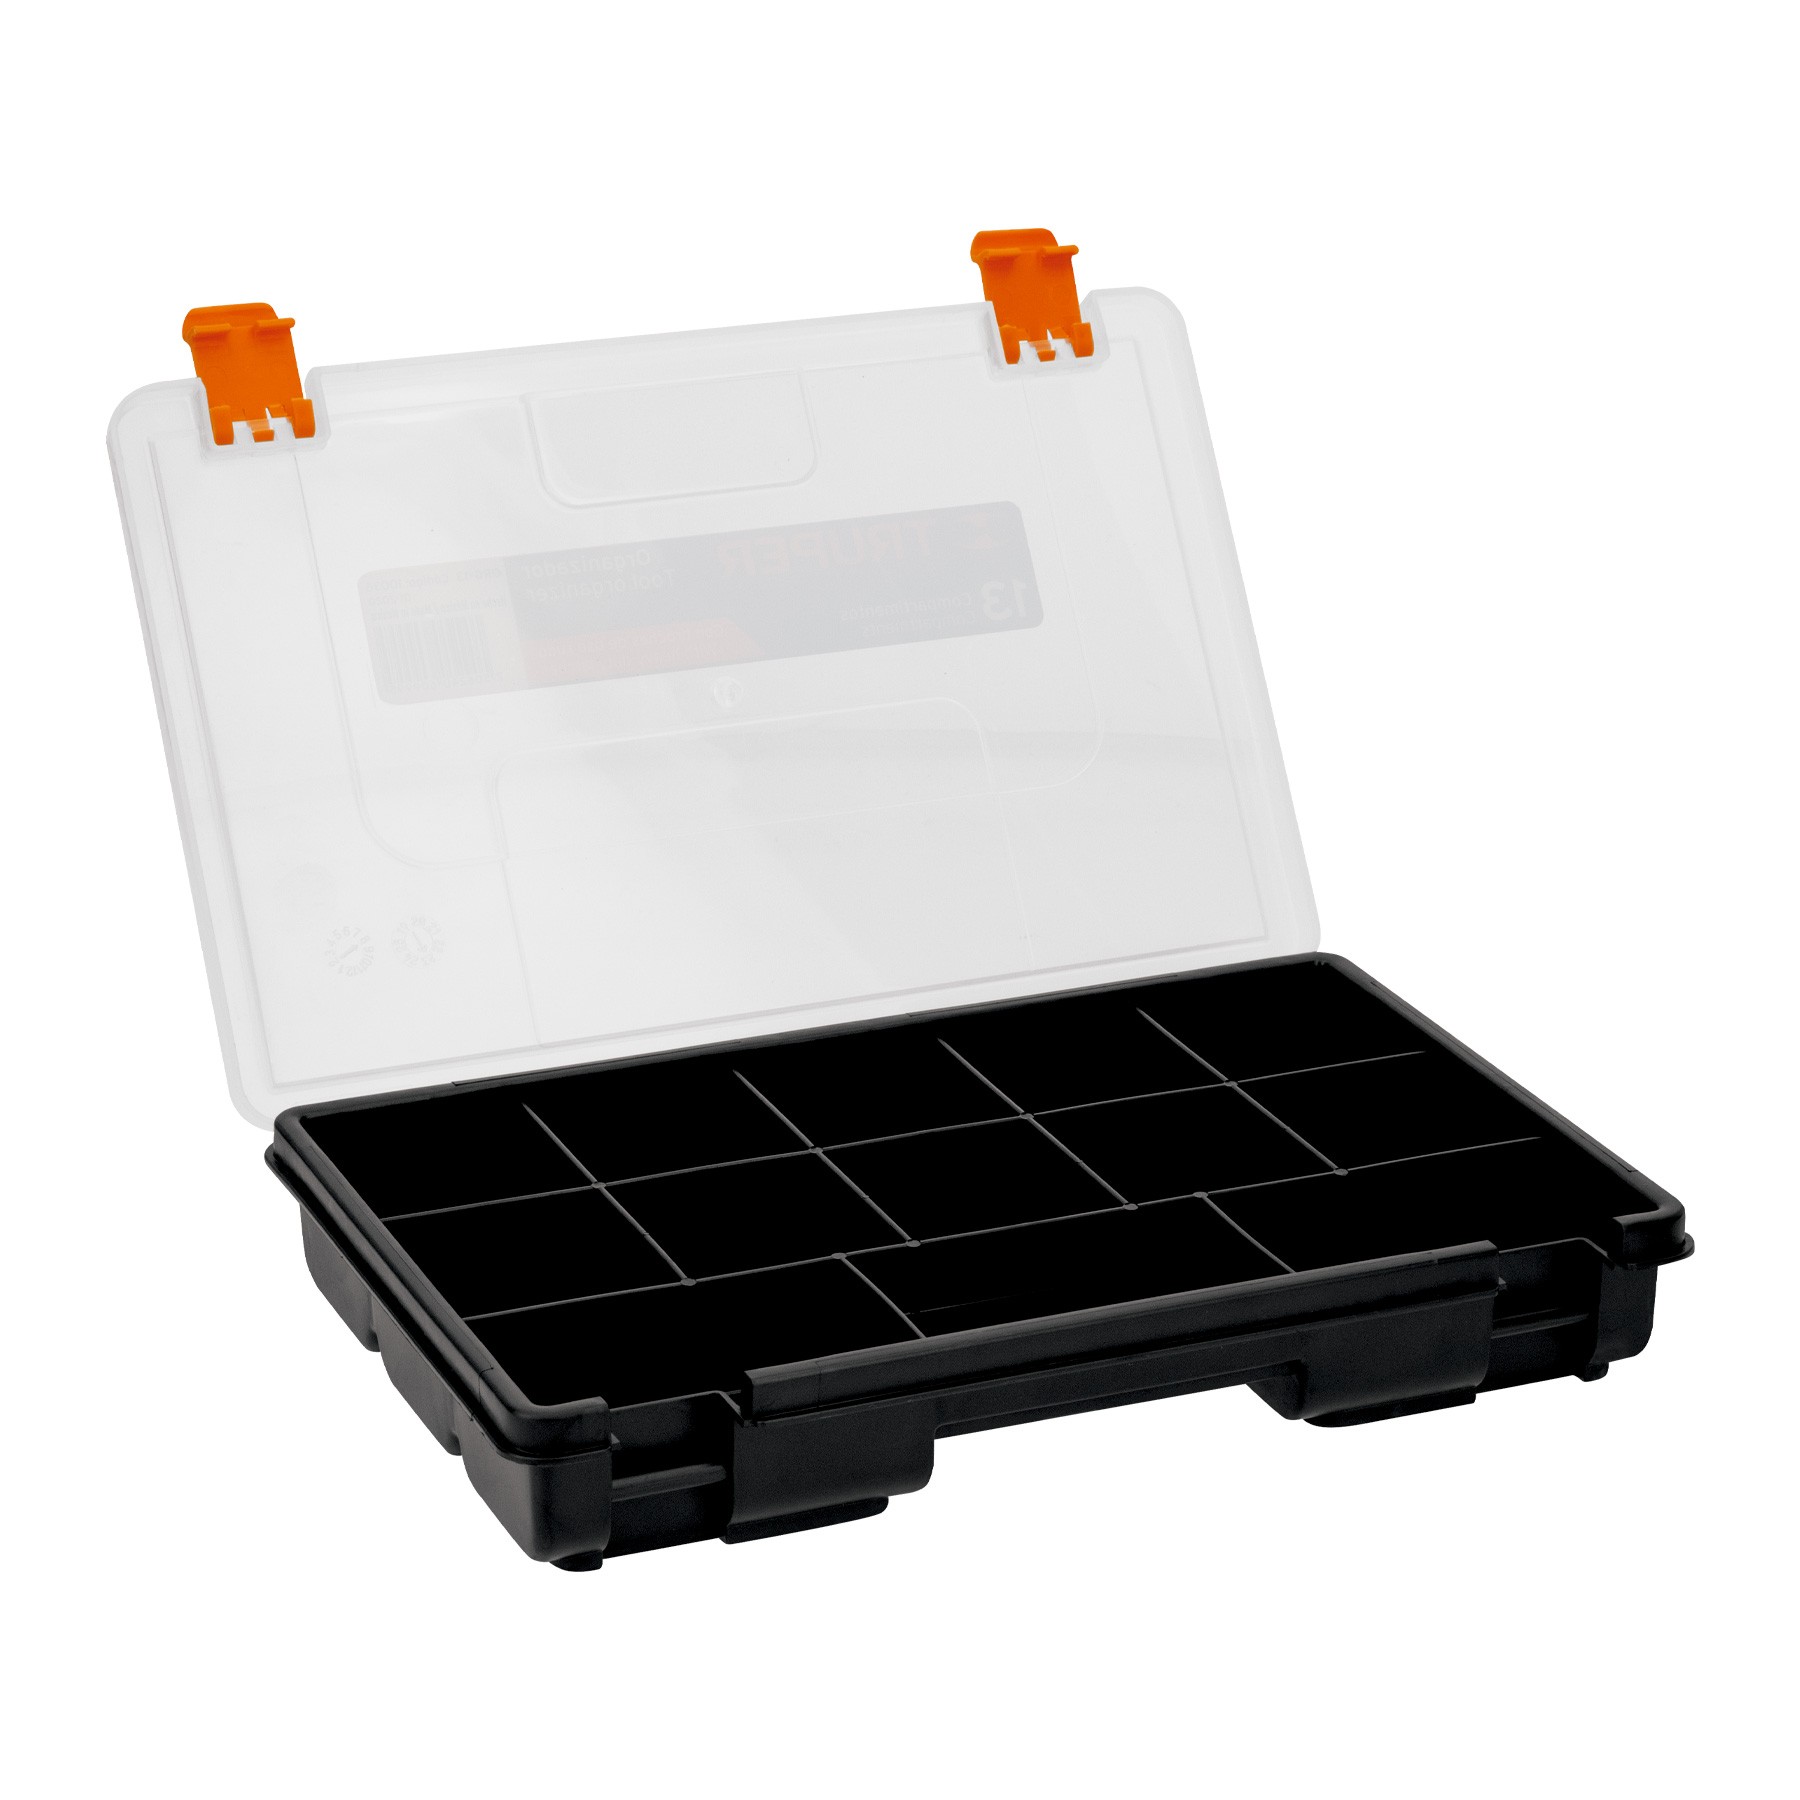 Plastic Forte - Porta estropajos con 3 compartimentos 21,6 x 7,9 x 12,3 cm,  color aleatorio, organizador de fregadero, soporte p